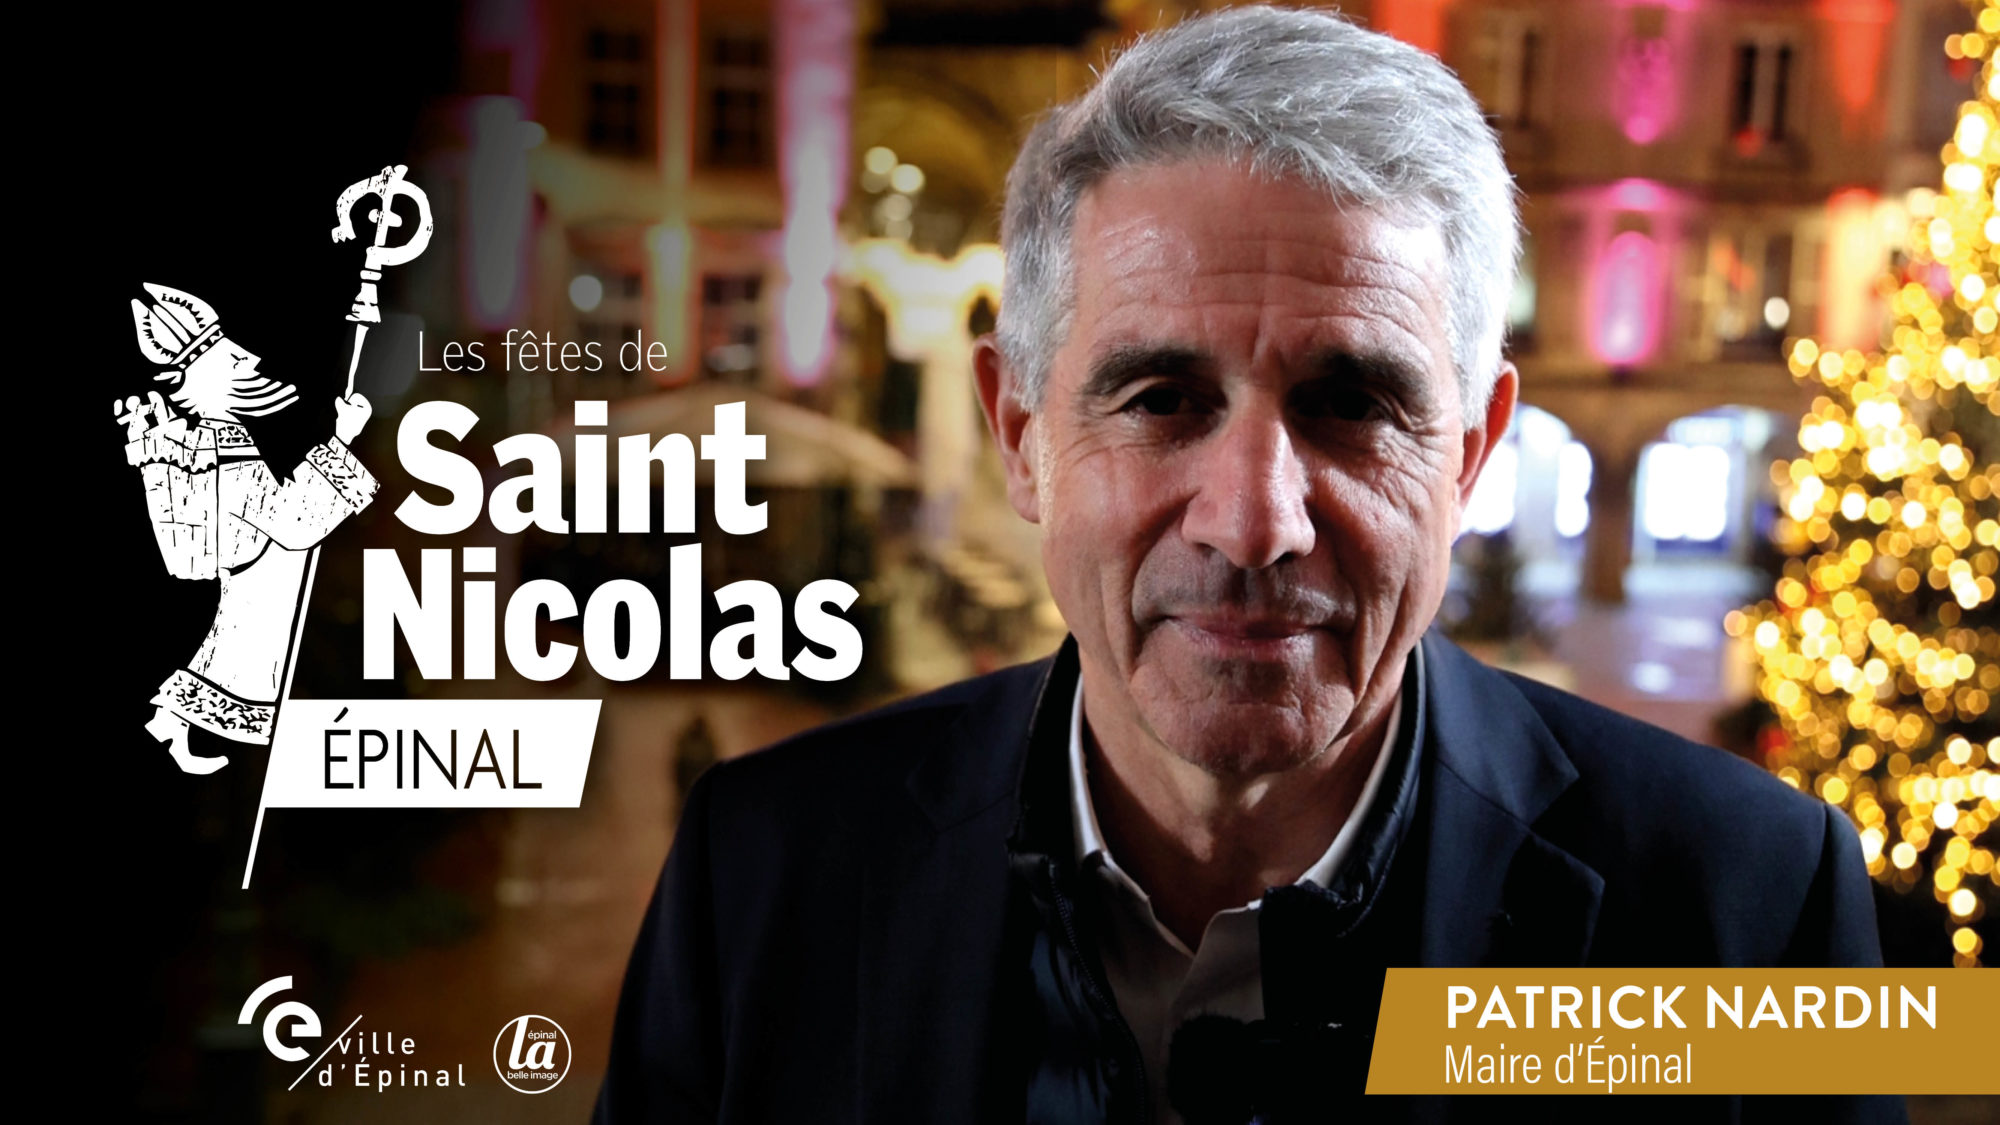 Festivités 2022 à Épinal : Patrick Nardin s’exprime par message vidéo